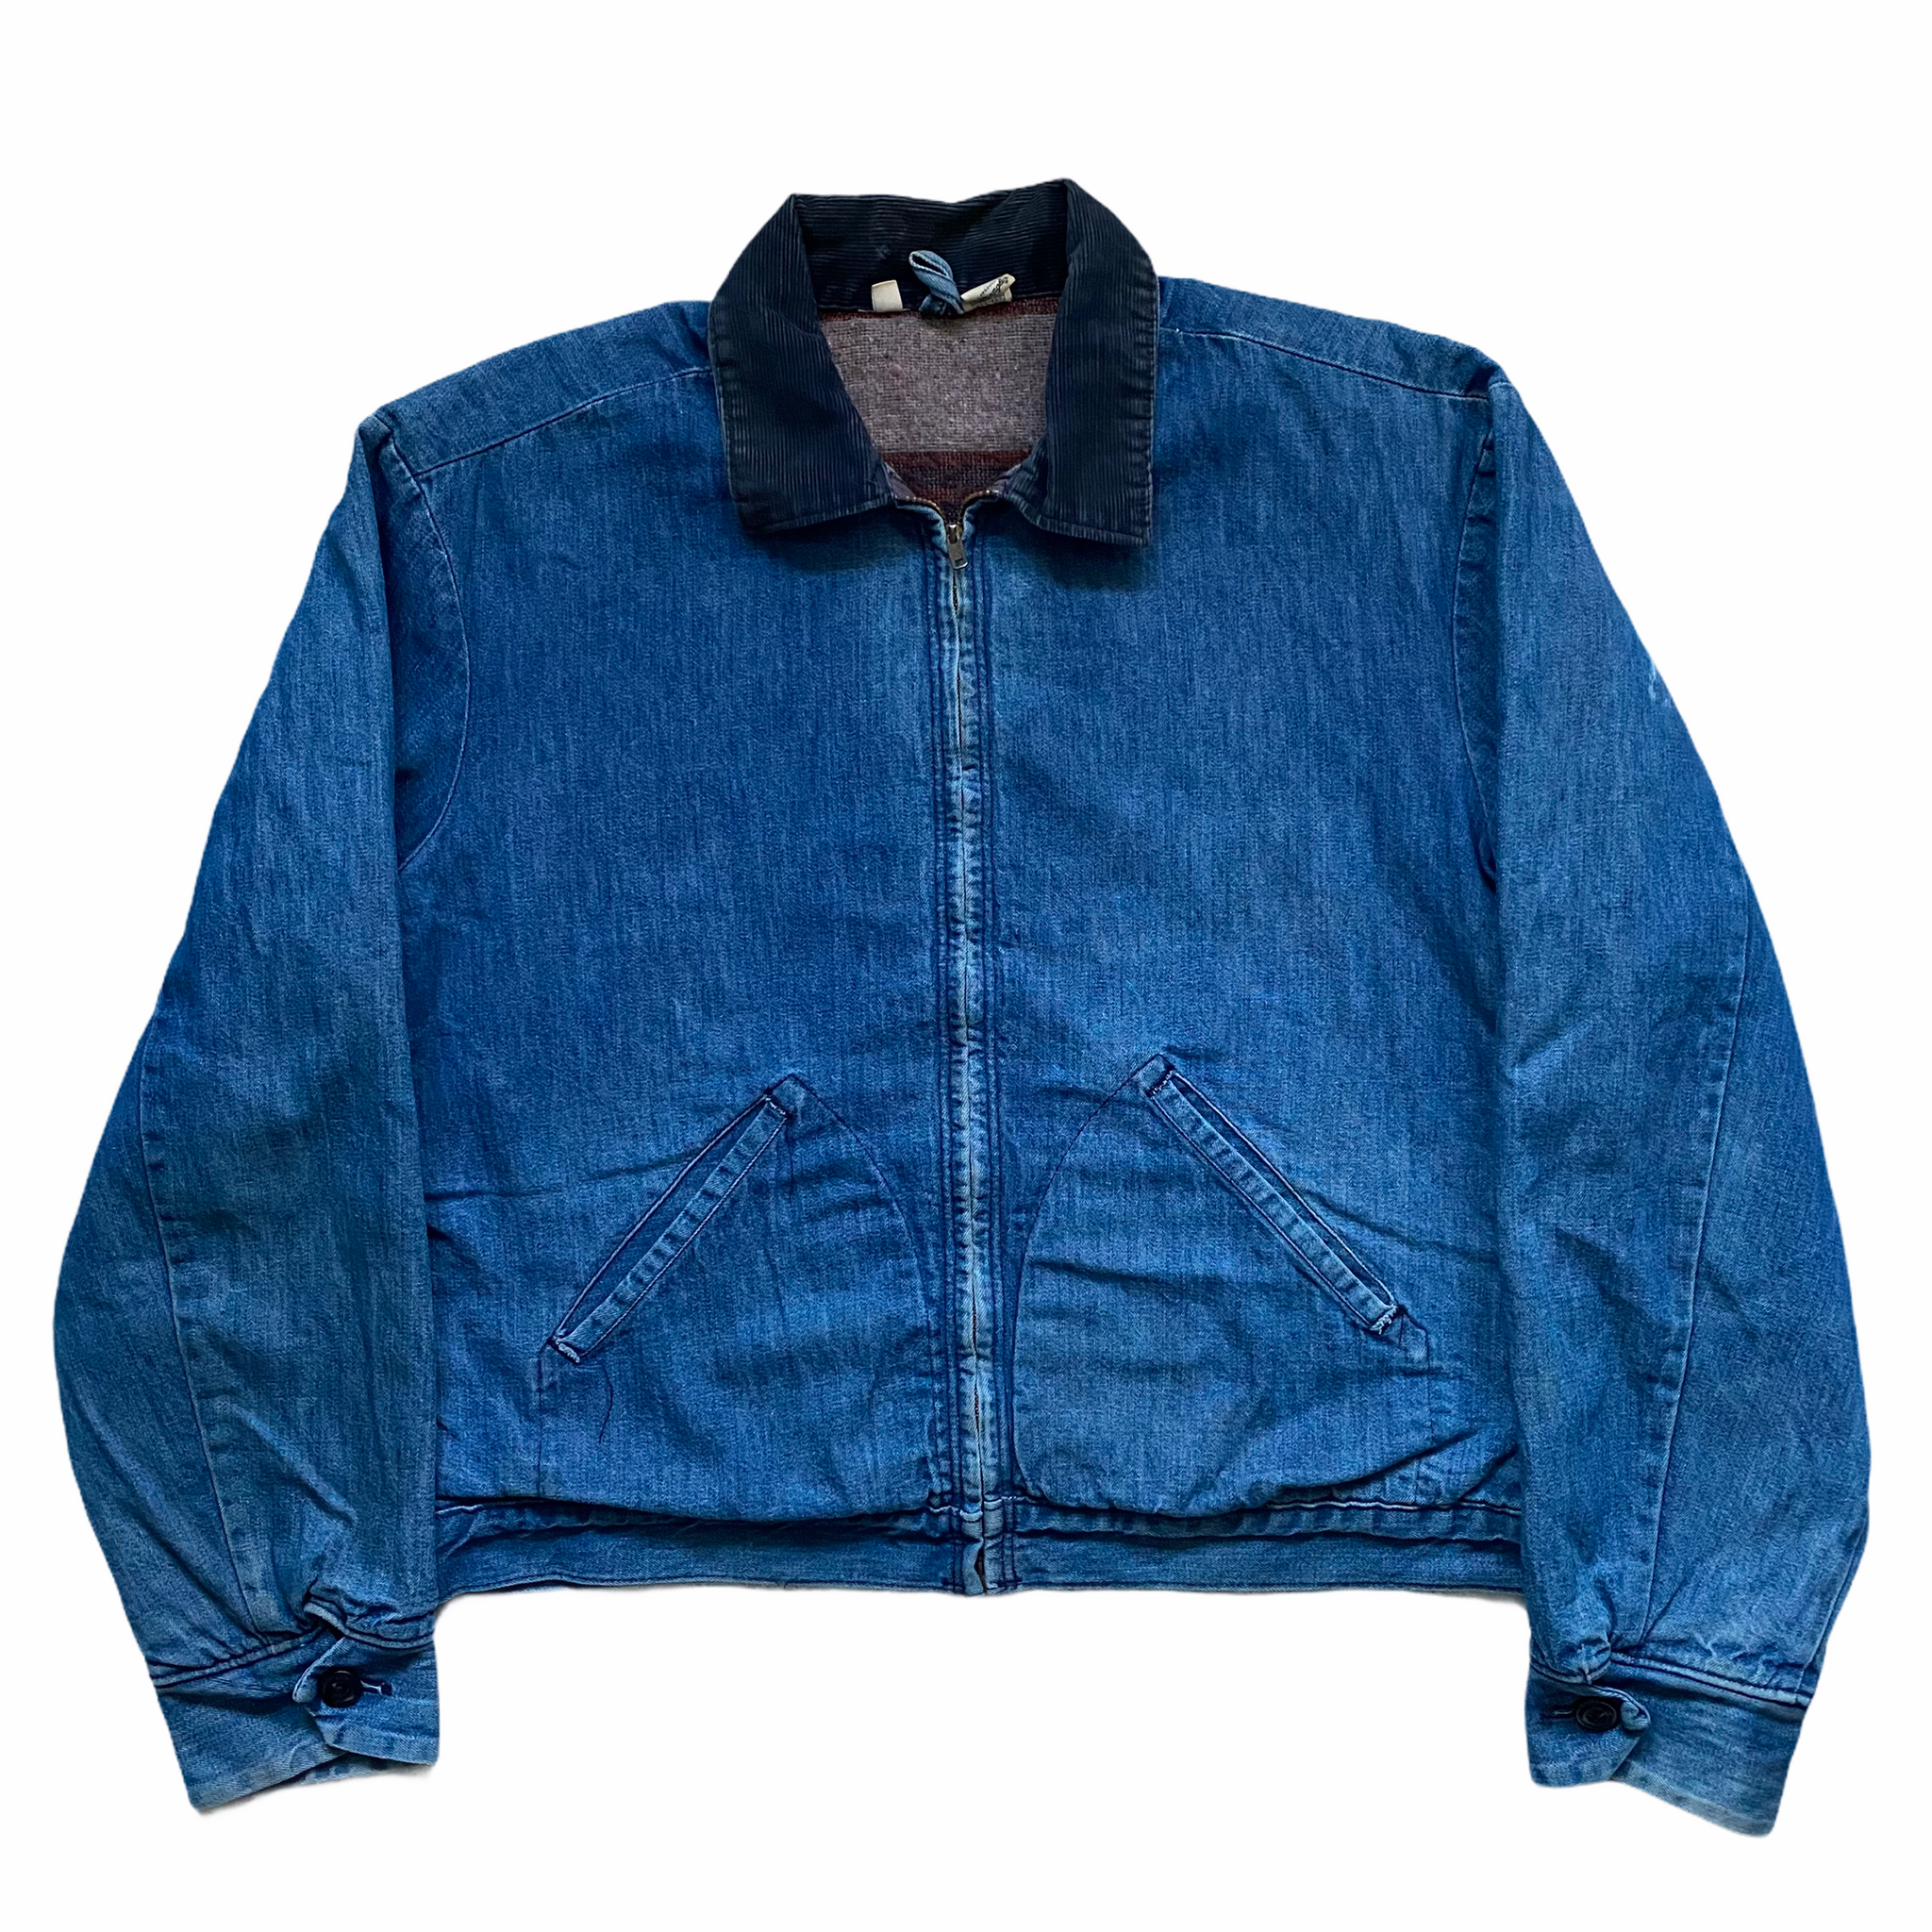 1960s Wrangler Blanket Lined Work Denim Jacket Size 42 (Fits M/L) –  ROCKHOPPER VINTAGE